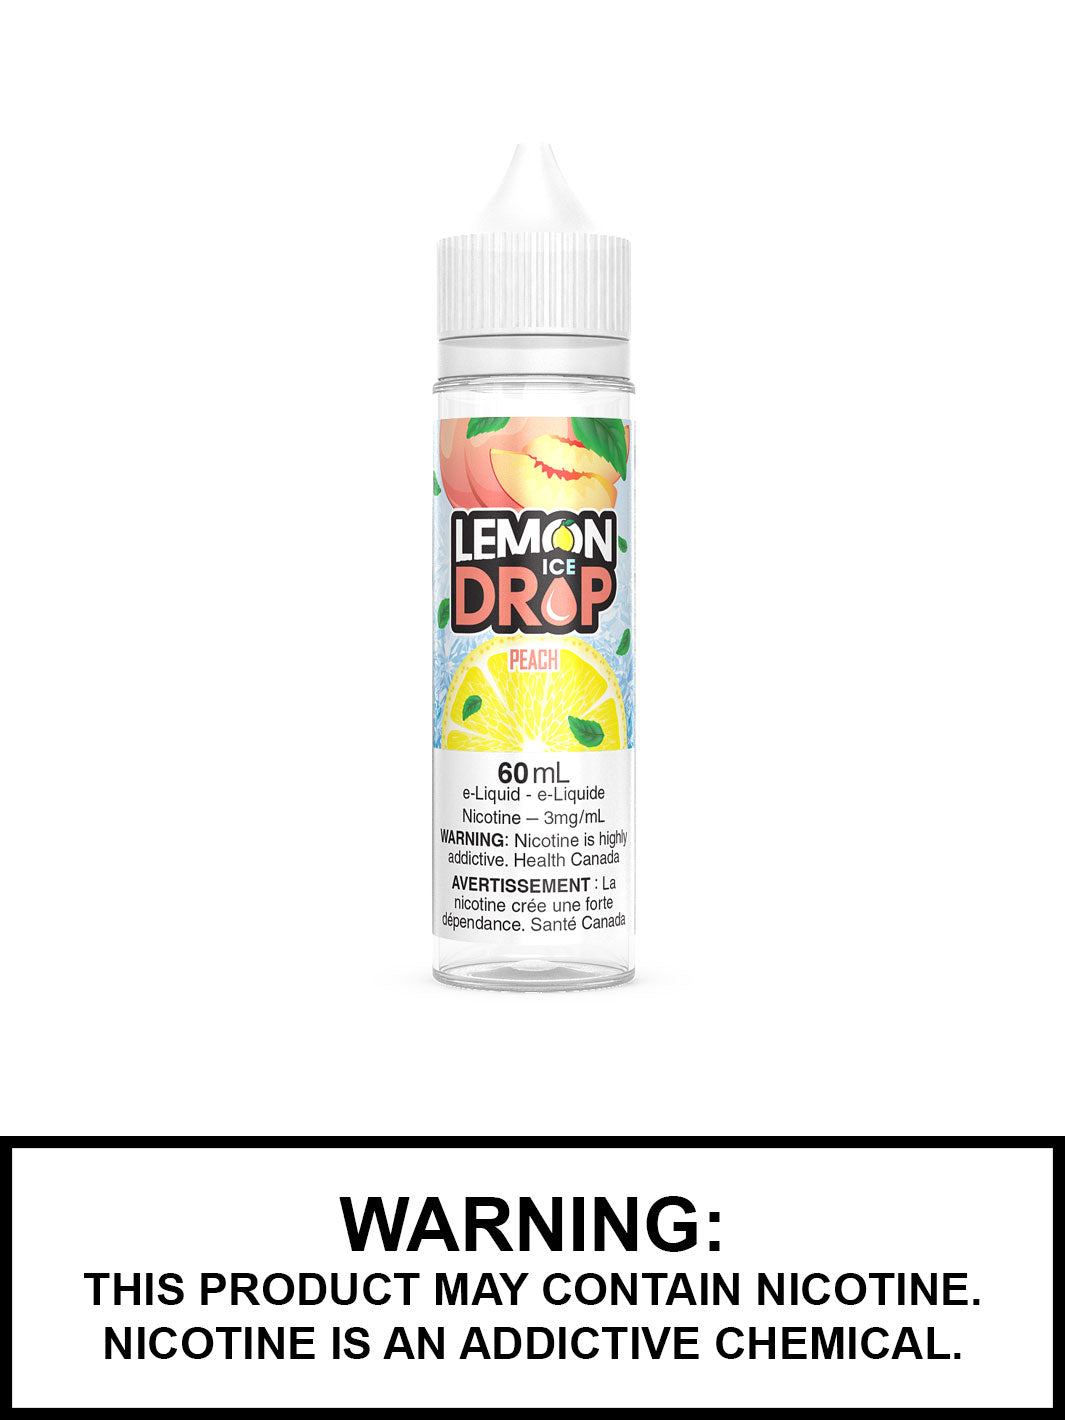 Lemon drop vape juice, Peach by Lemon Drop Ice vape juice, vape360 Canada